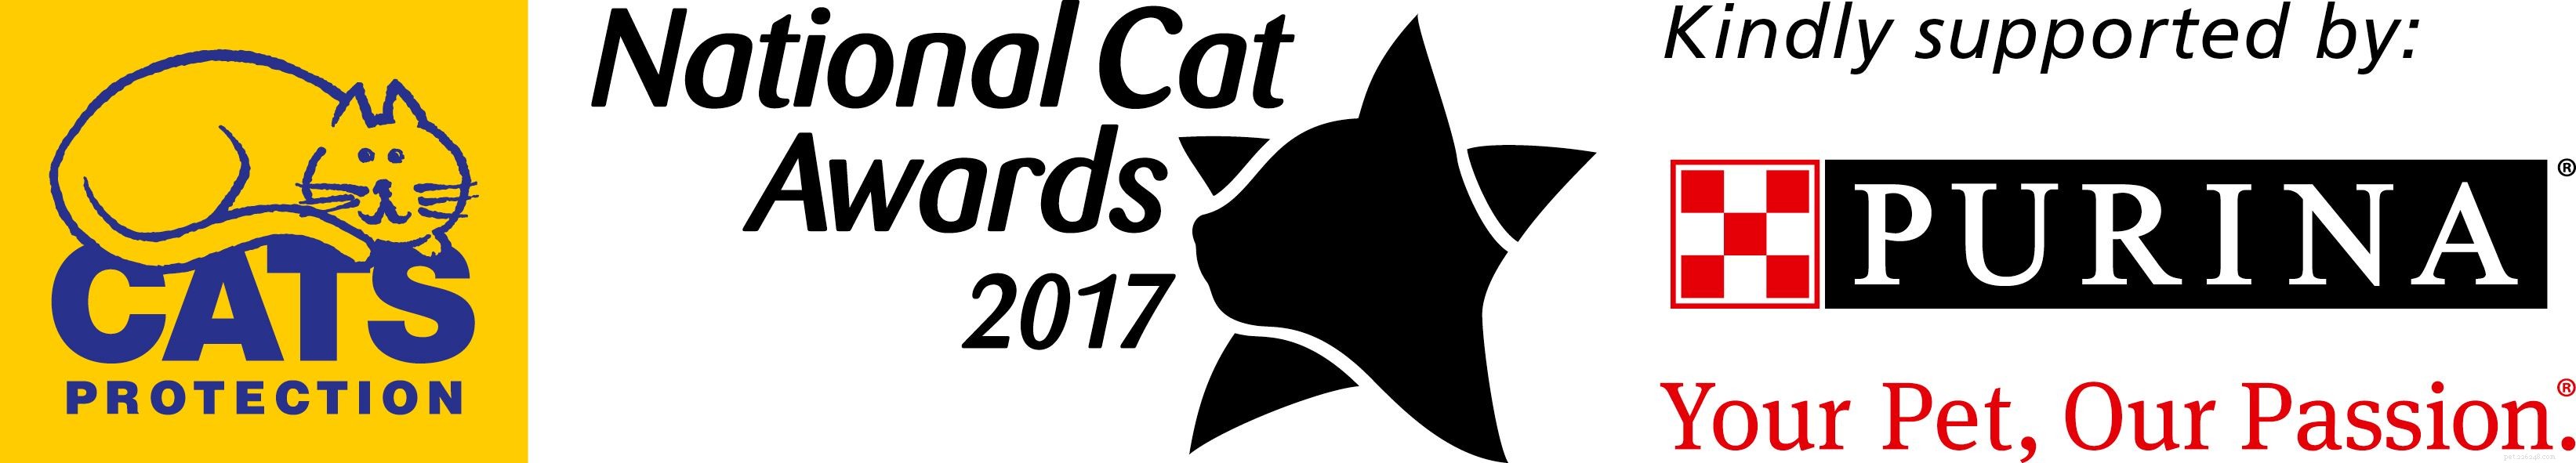 Познакомьтесь с финалистами категории «Вечные друзья пушистых» Национальной премии кошек 2017!